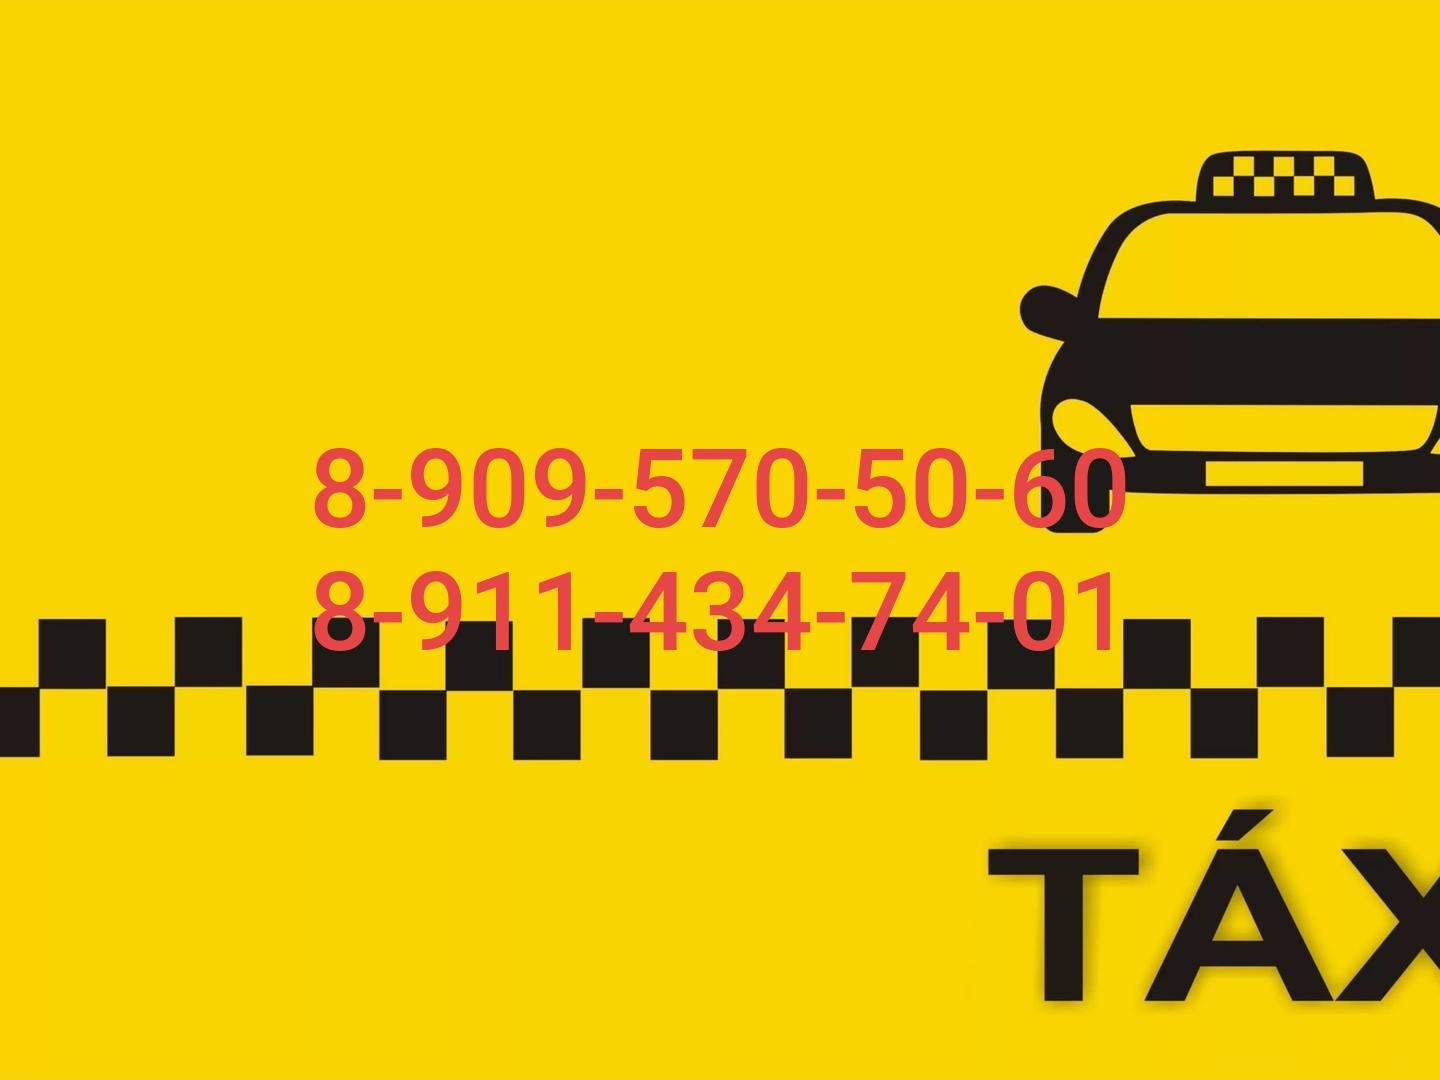 Единый телефон такси. Визитка такси. Макет визитки такси. Визитка такси шаблон. Логотип такси.